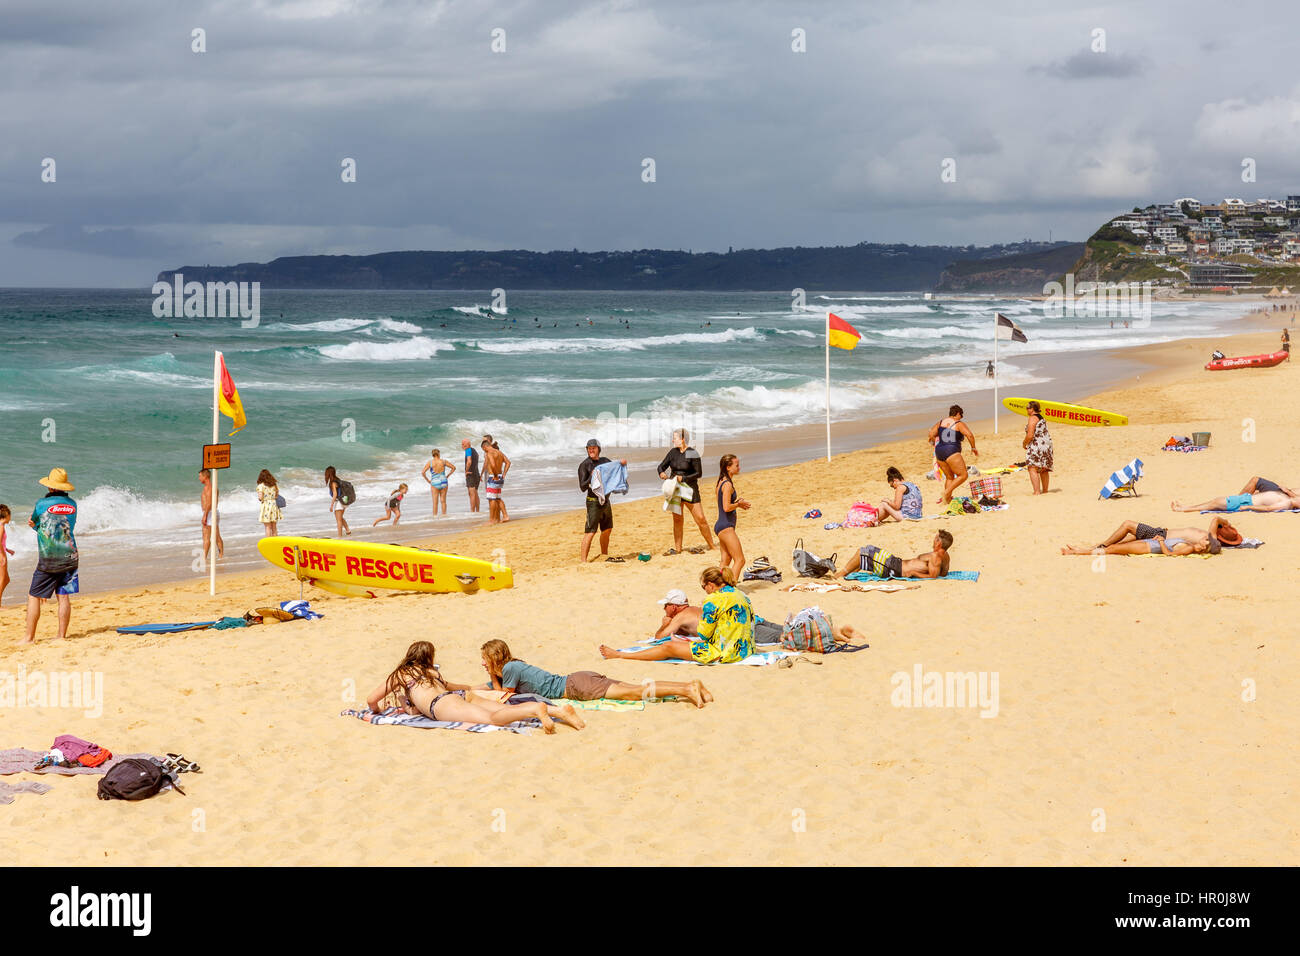 Plage de bar, l'un des plages côtières de Newcastle, Nouvelle-Galles du Sud, Australie Banque D'Images